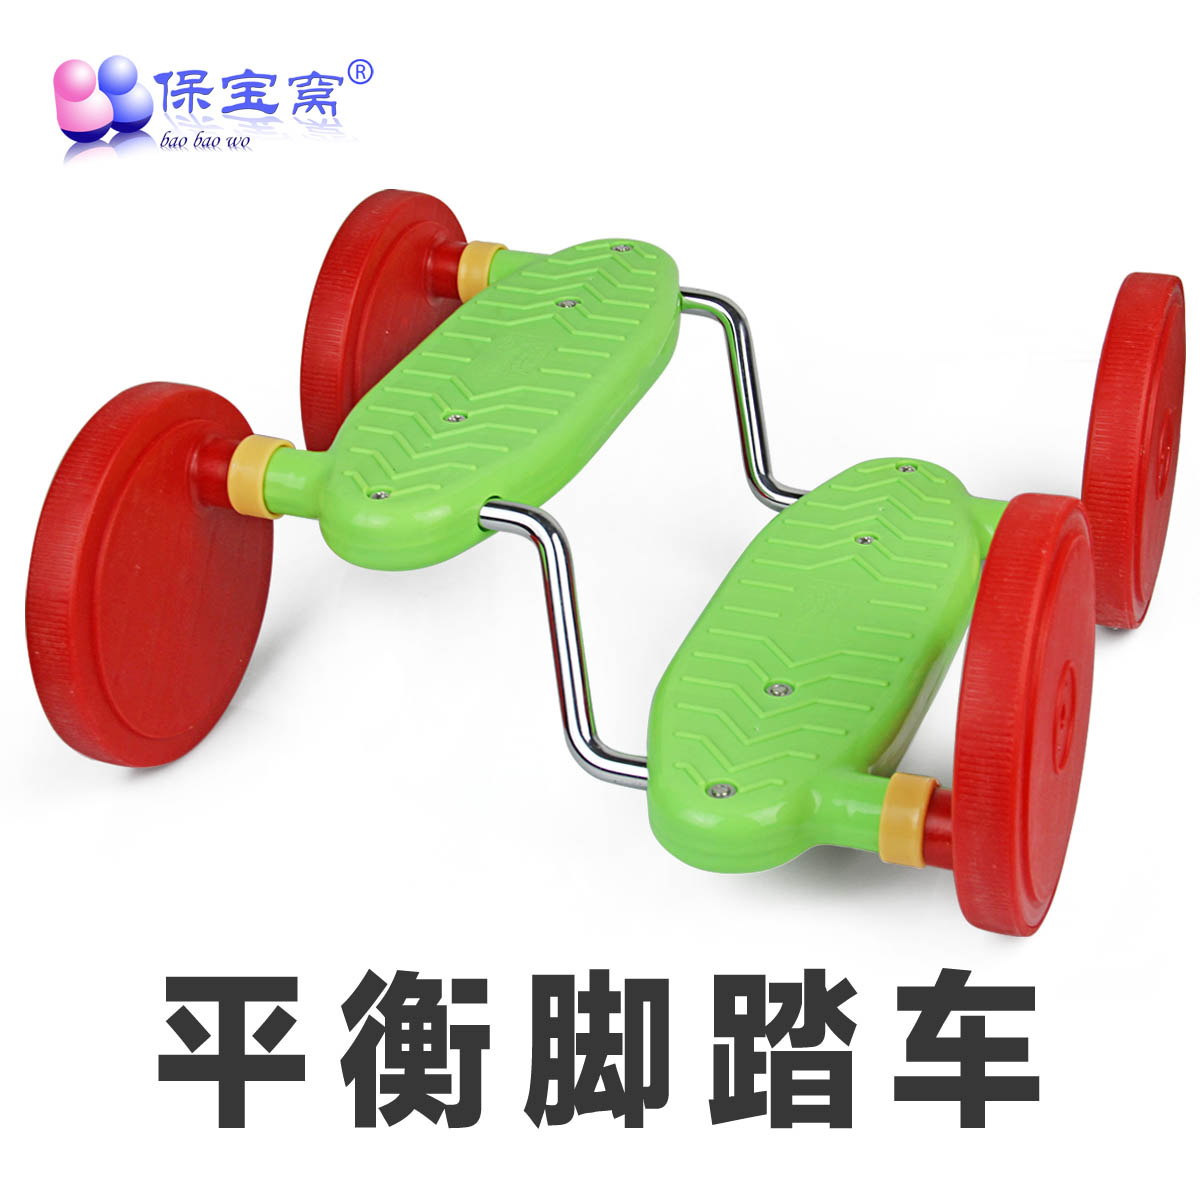 保宝窝 儿童平衡脚踏车四轮踏板车 宝宝户外运动感统训练器材玩具